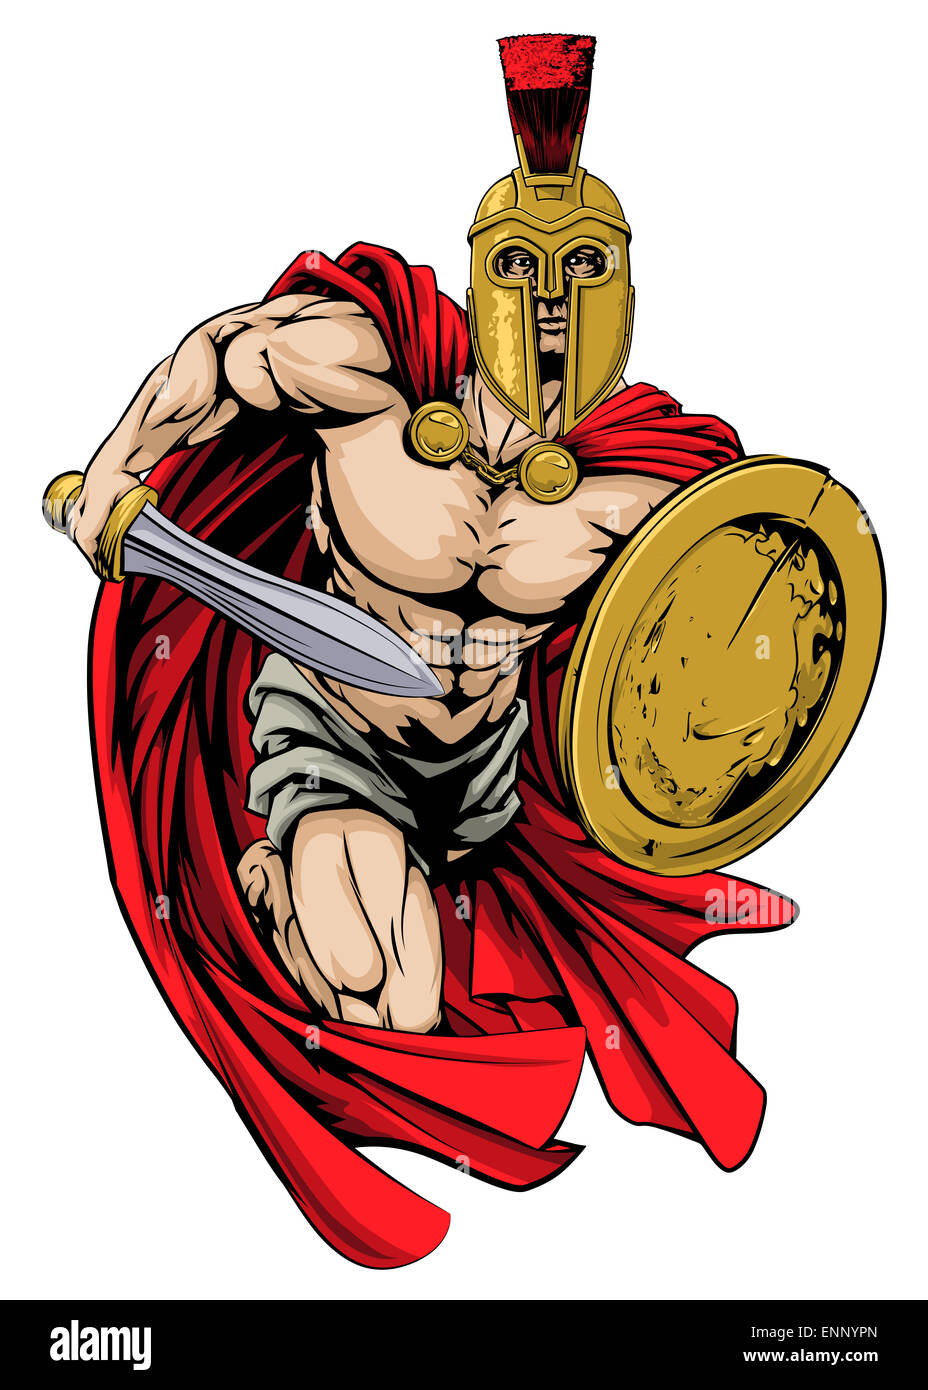 Personaje de disfraz de mascota de soldado romano verde azulado